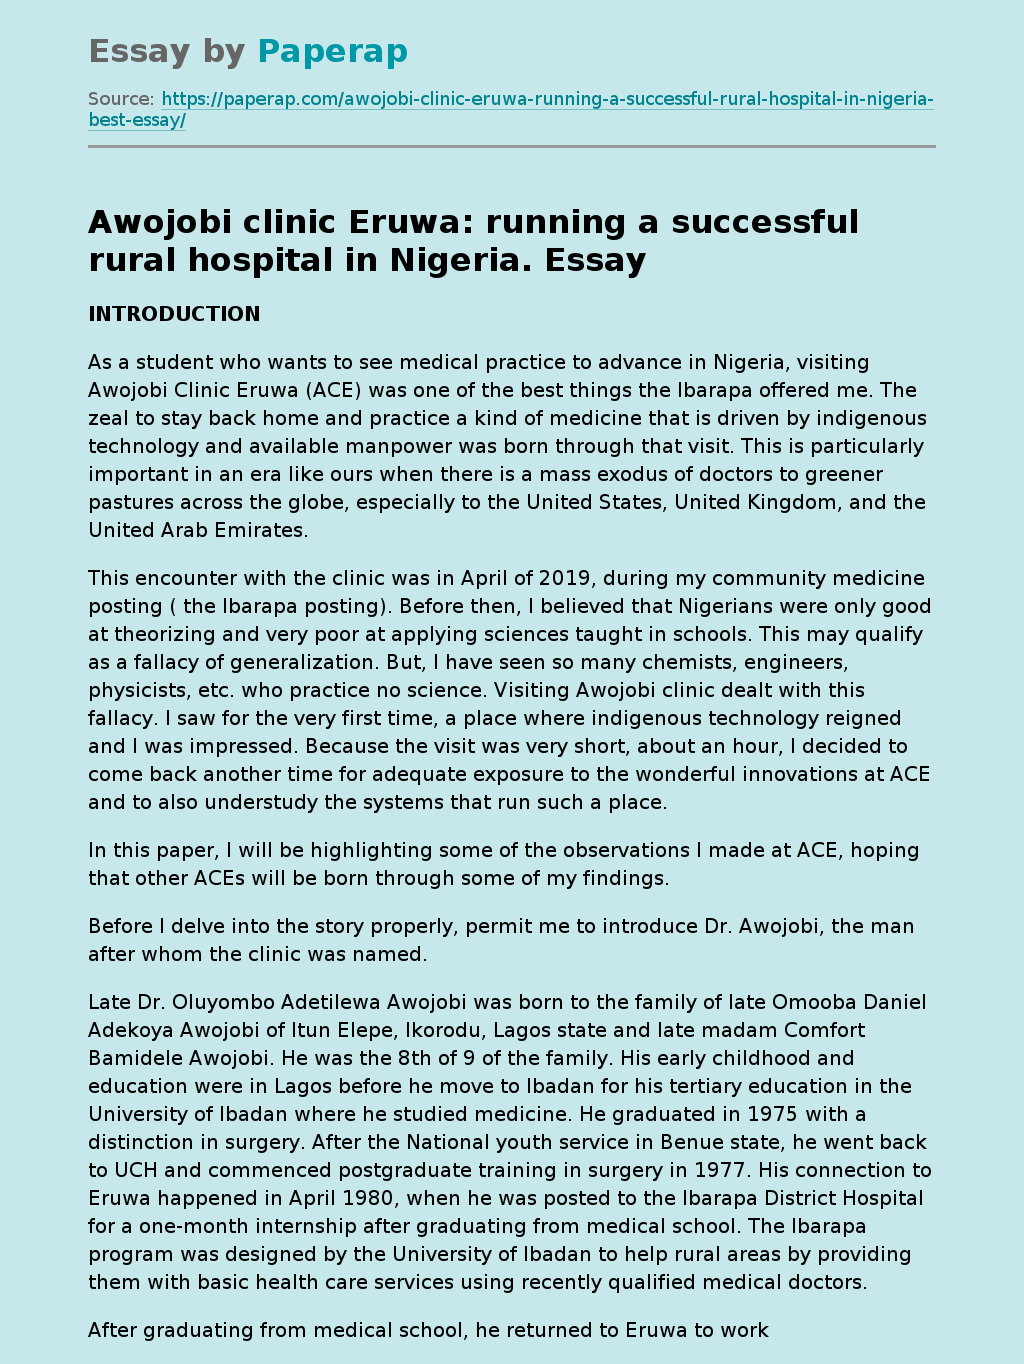 Awojobi clinic Eruwa: running a successful rural hospital in Nigeria.